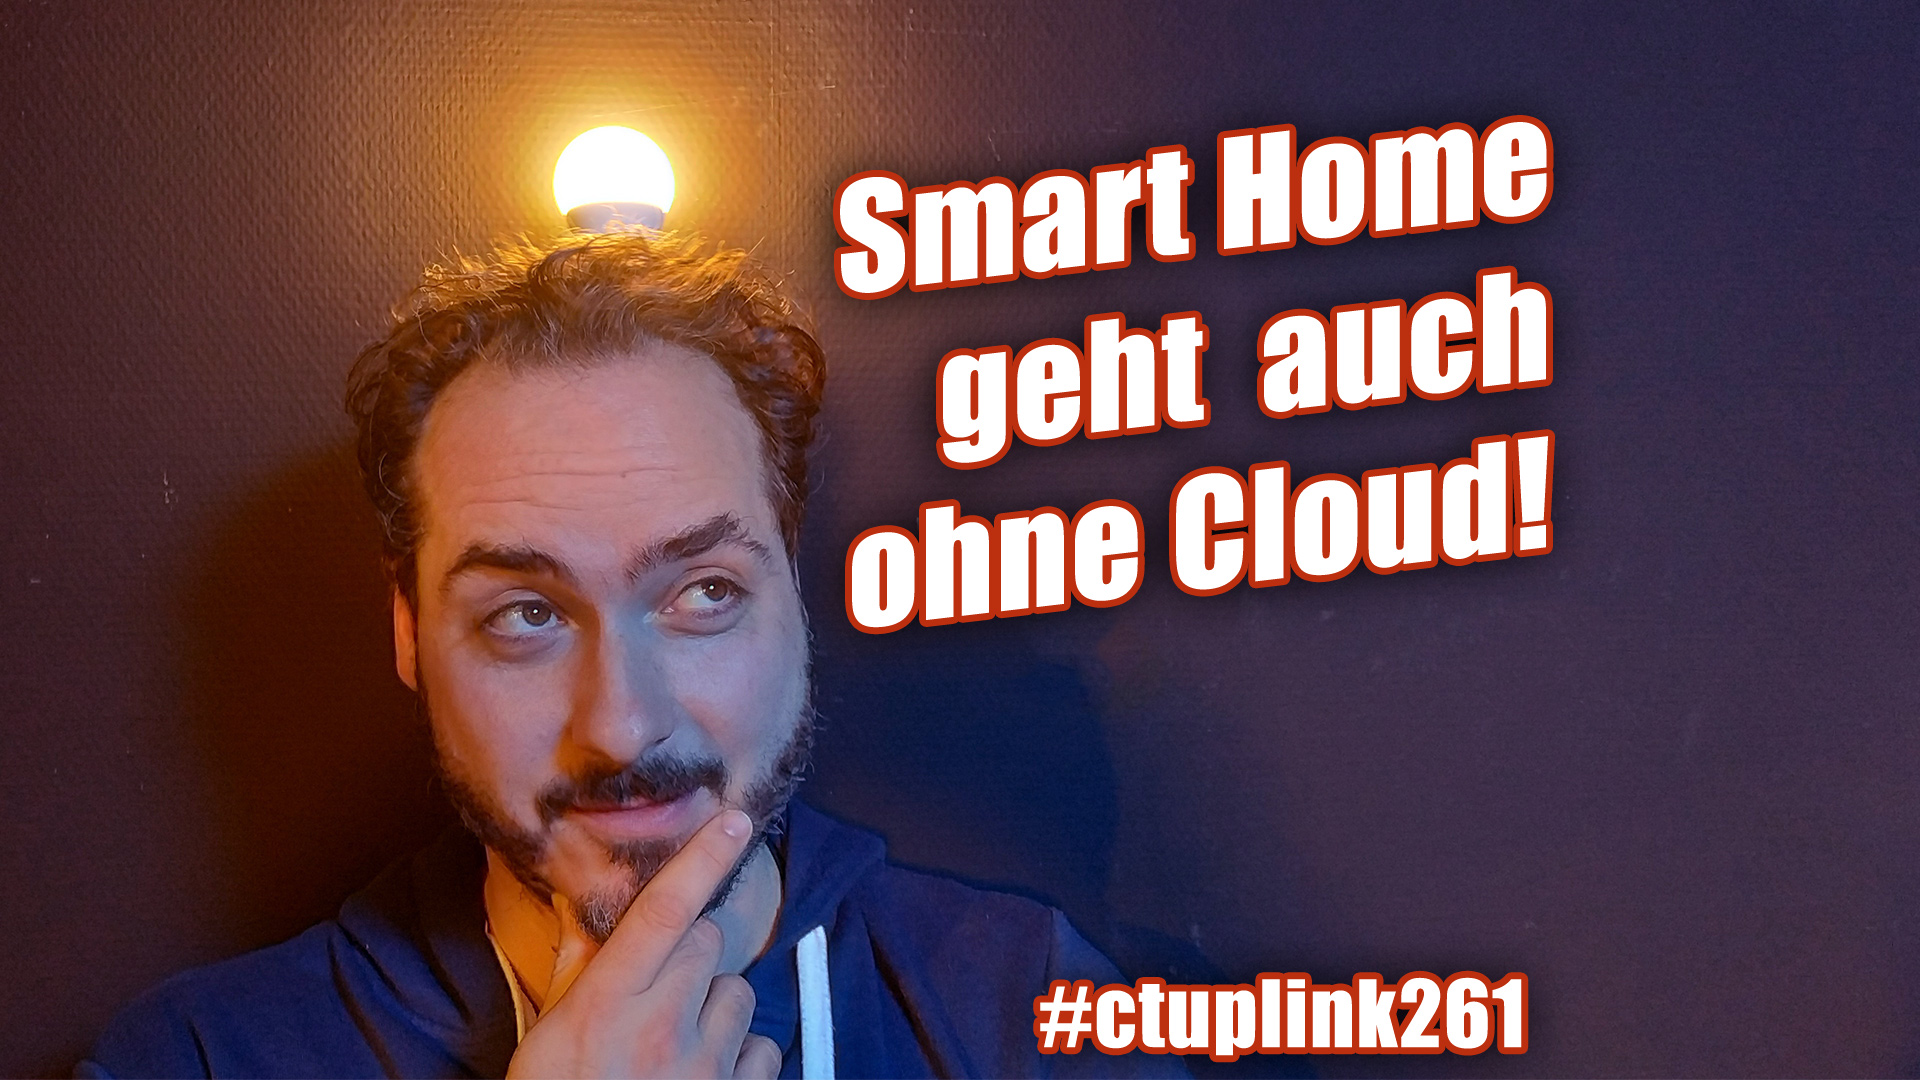 c't uplink 26.1: Smart Home ohne Cloud und selbst gebaut